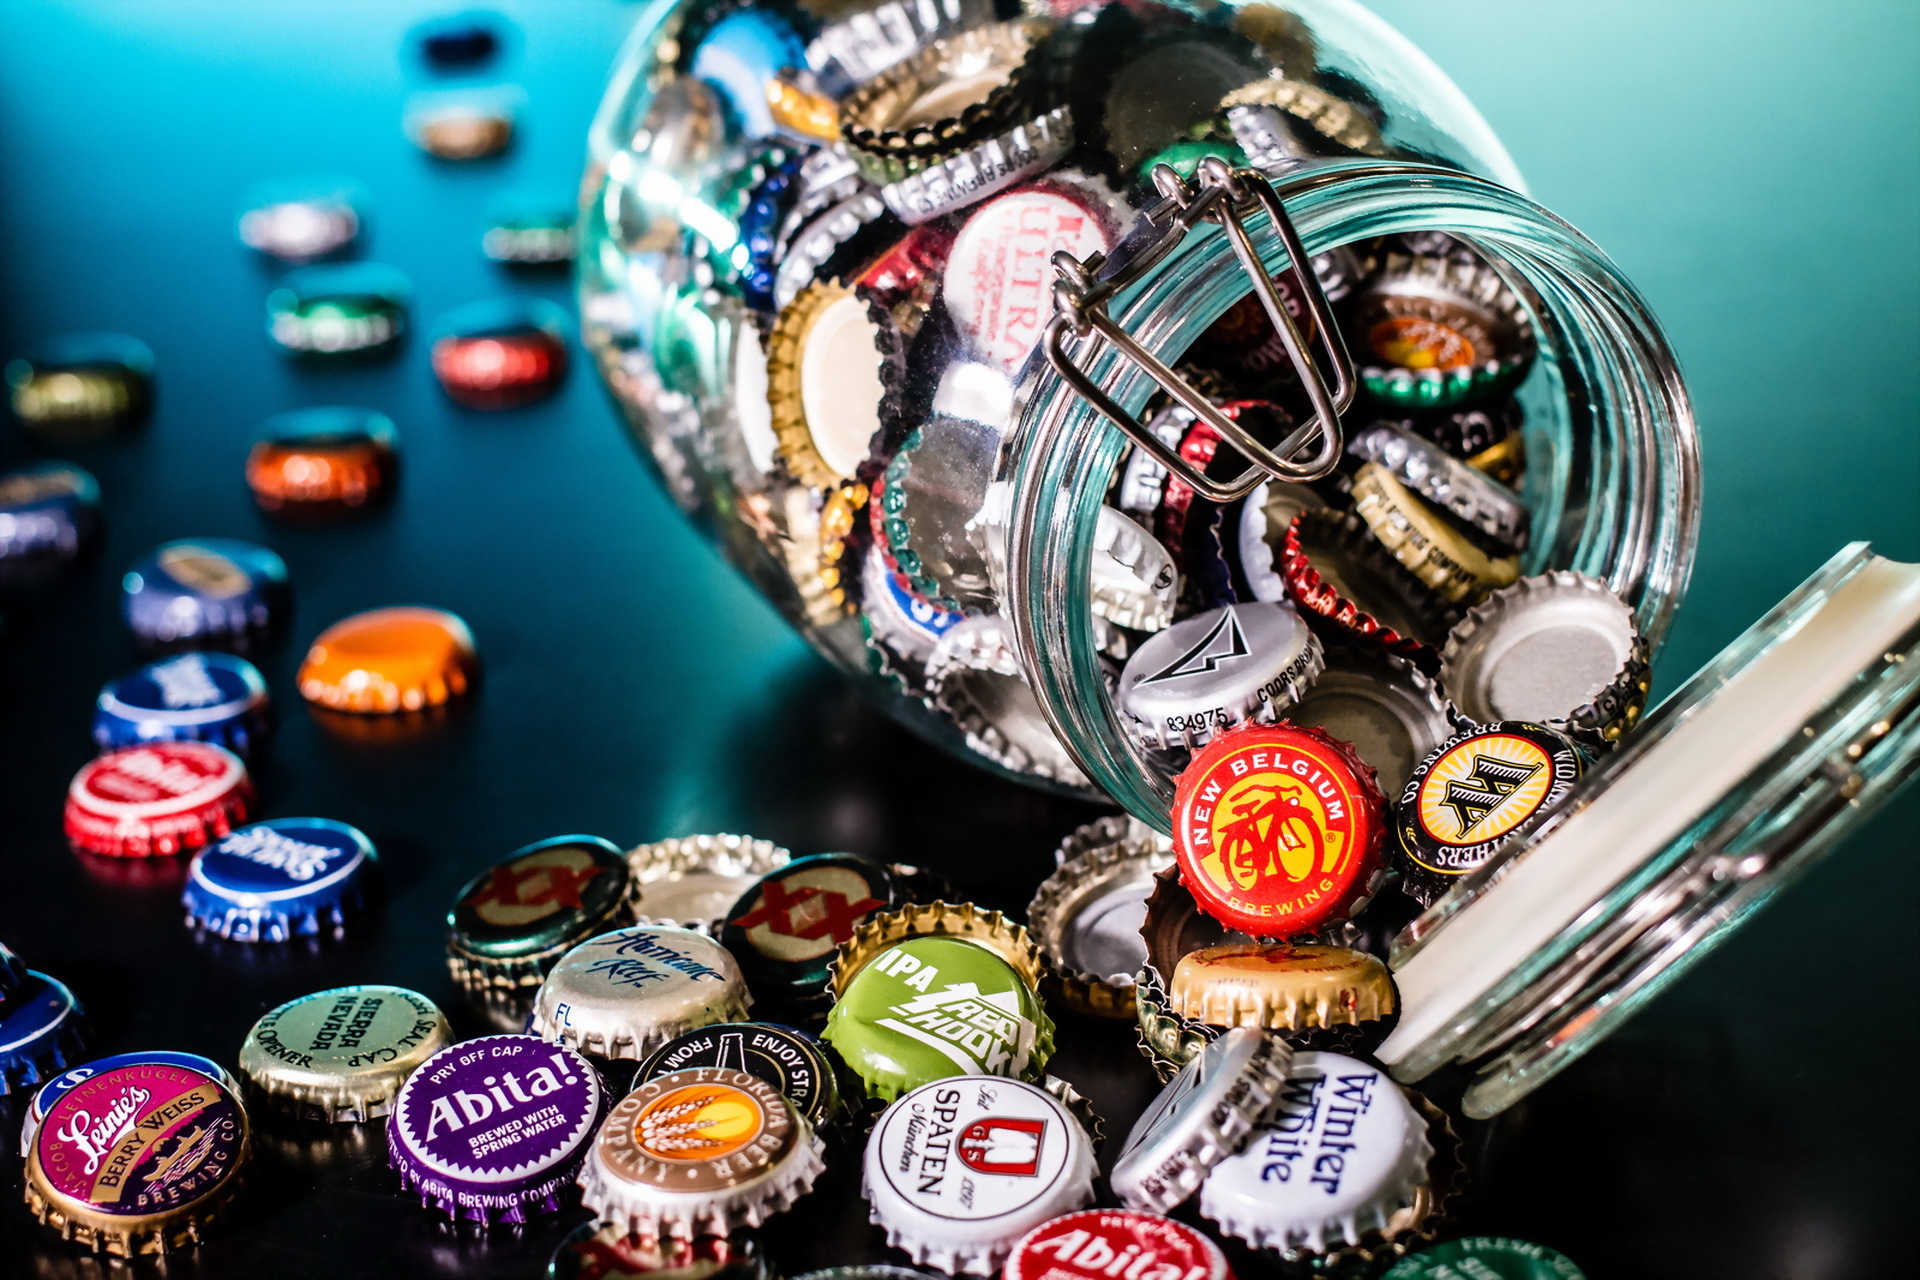 beer bottle caps, misc, jar